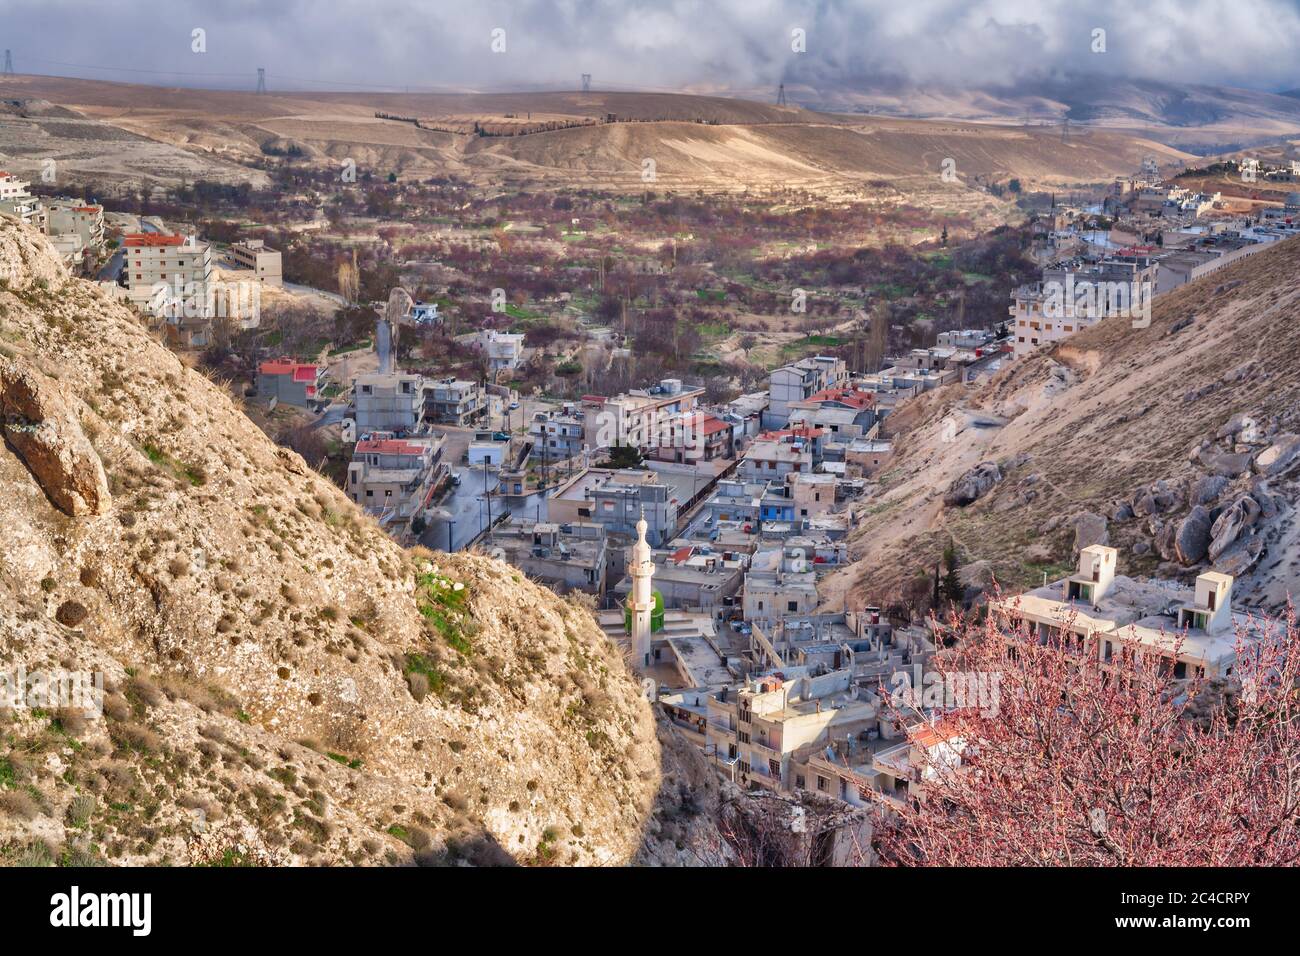 Maloula, Maalula, Dorf mit dem Kloster Mar Sarkis, St. Sergius auf dem Gipfel des Hügels, Syrien Stockfoto